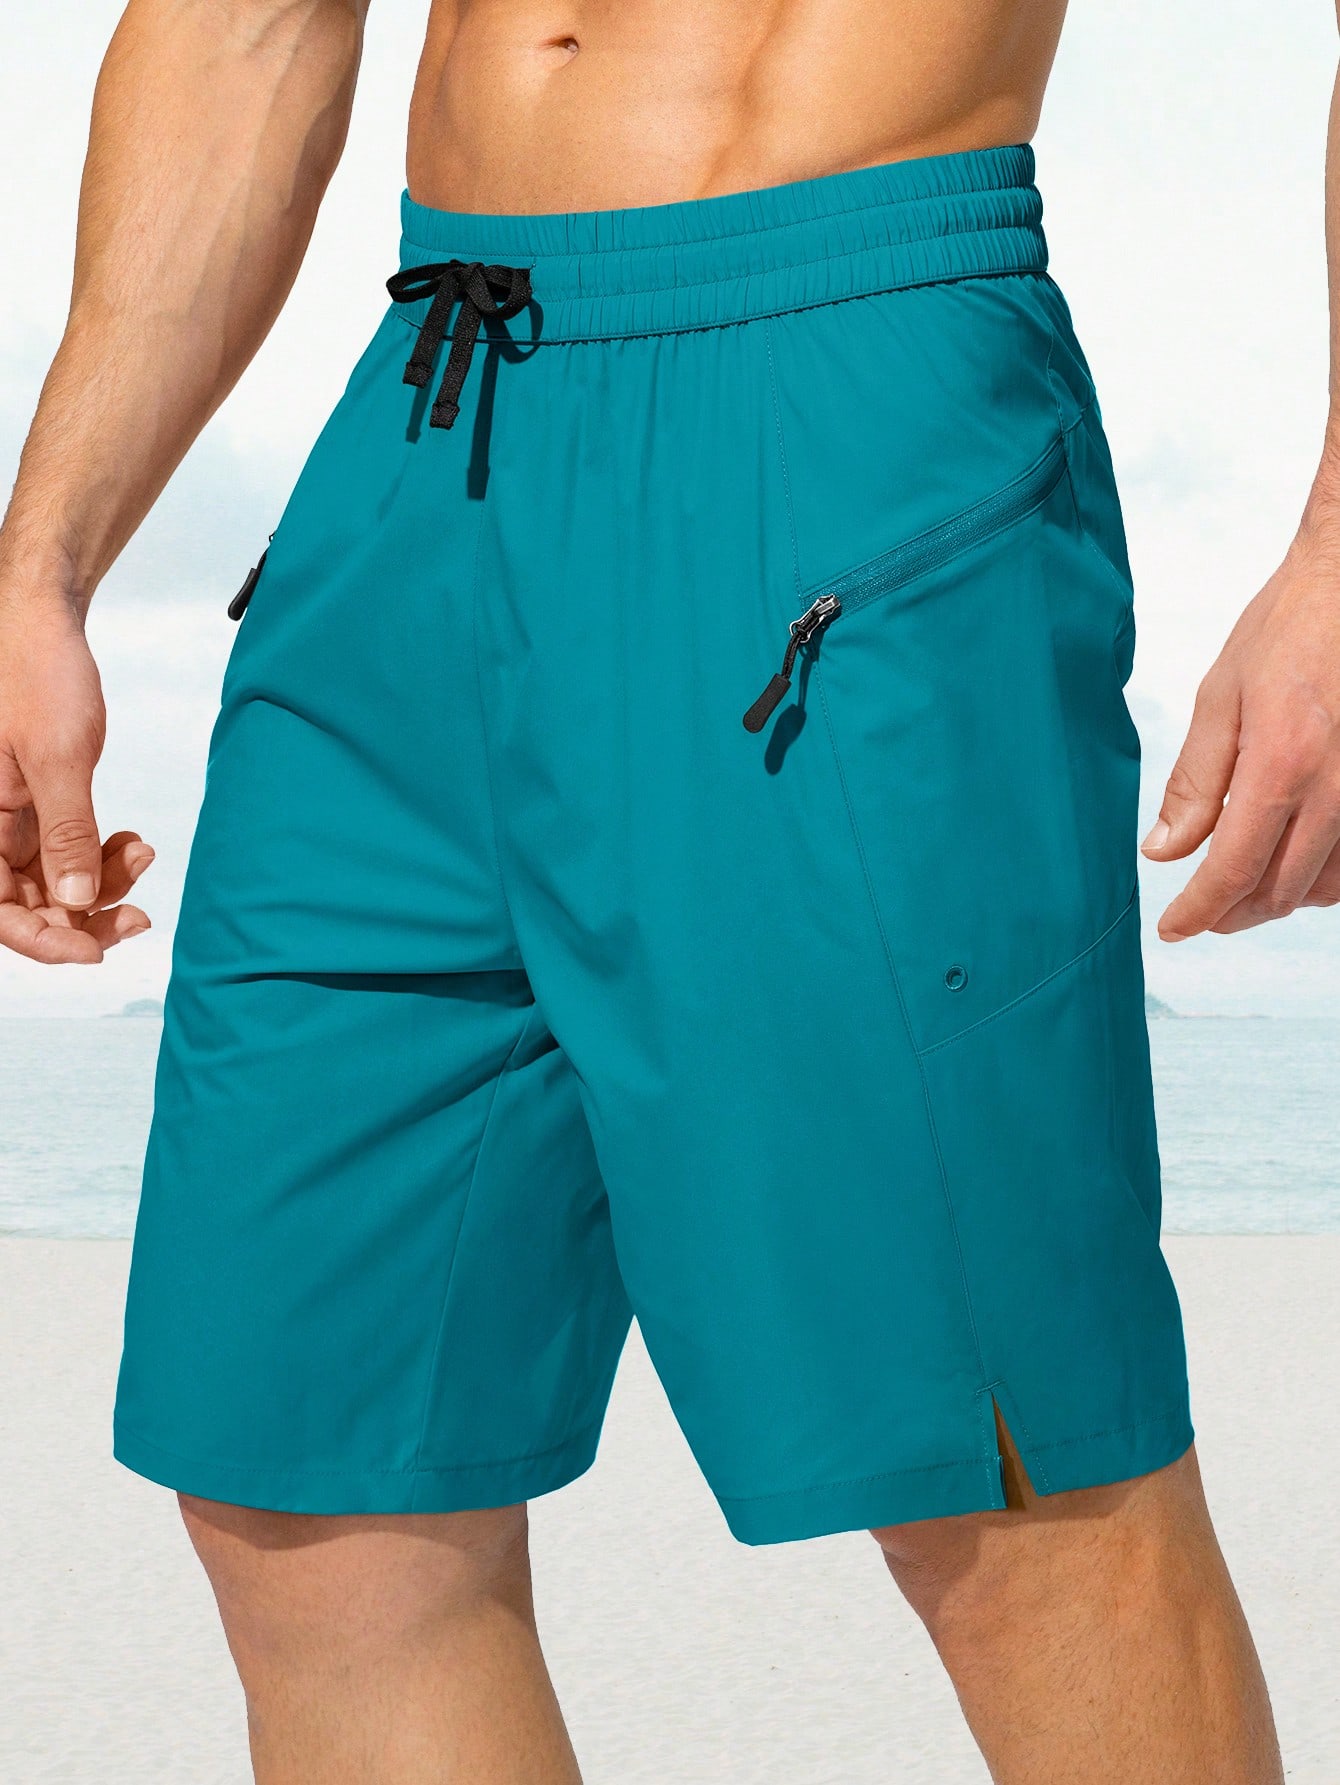 G Gradual Мужские плавки G Gradual Быстросохнущие шорты с карманами на молнии Пляжные шорты Купальные костюмы для мужчин - без сетчатой ​​подкладки, кадет синий